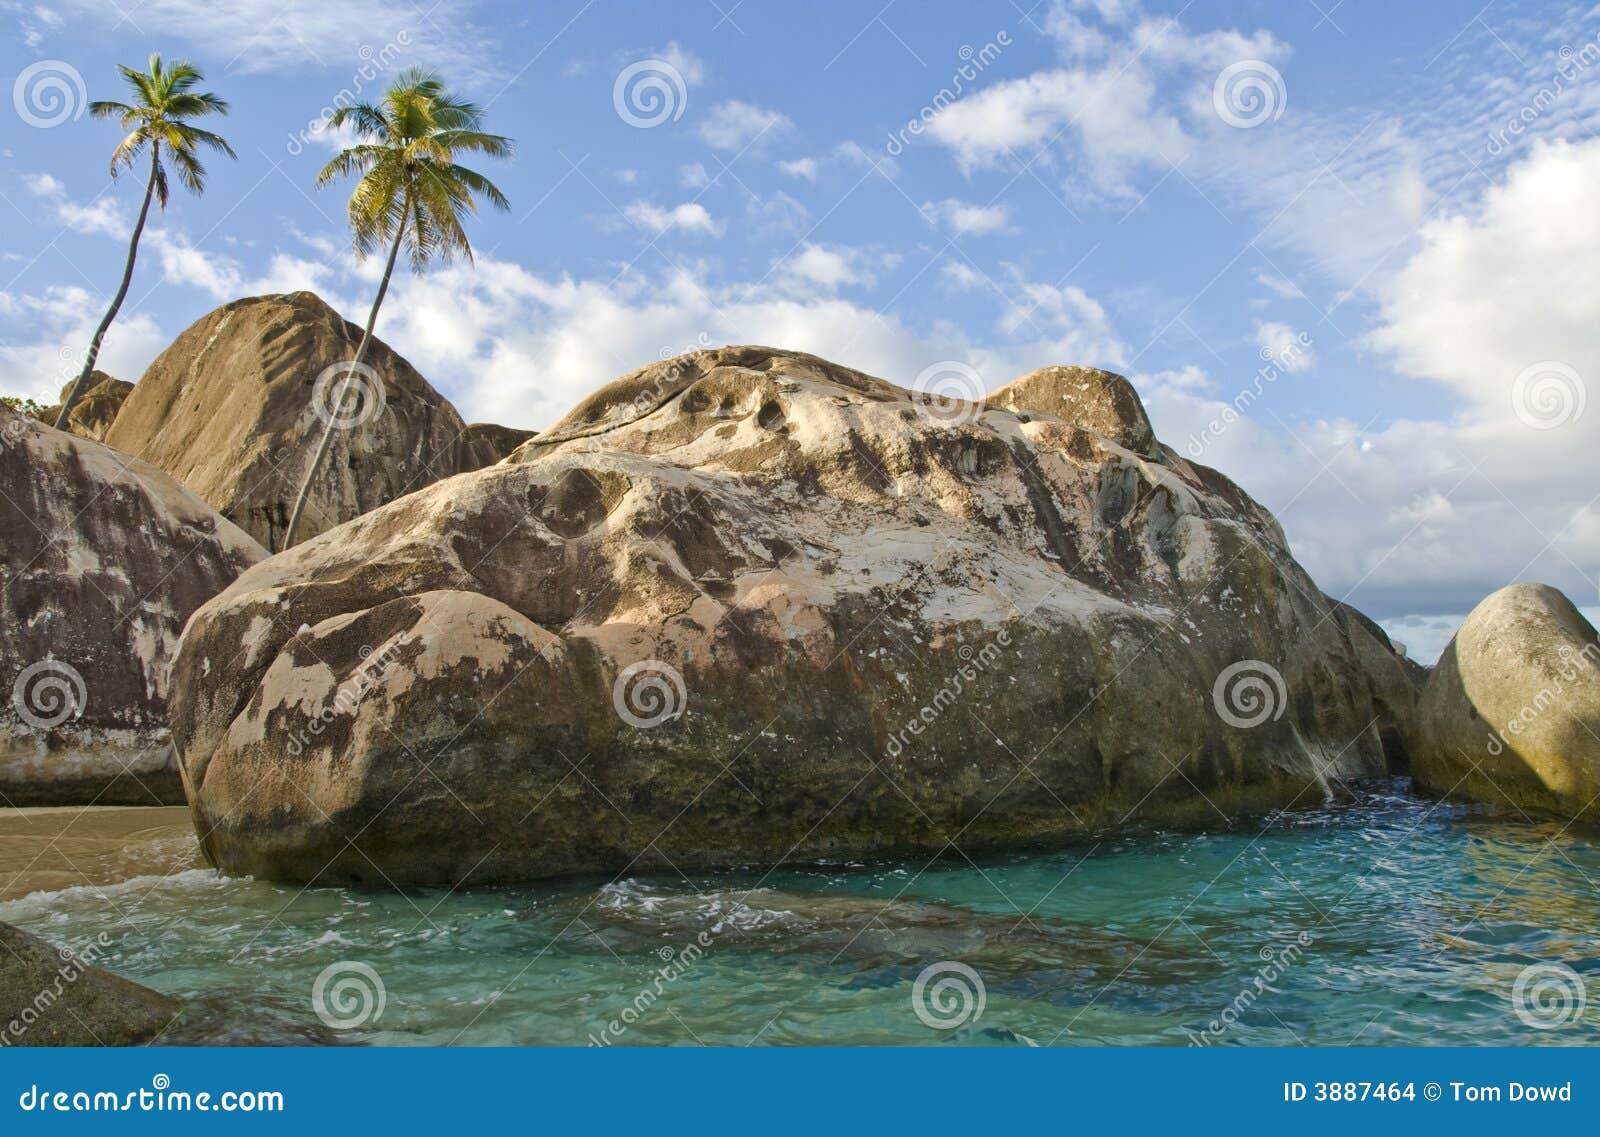 rocks on virgin gorda island